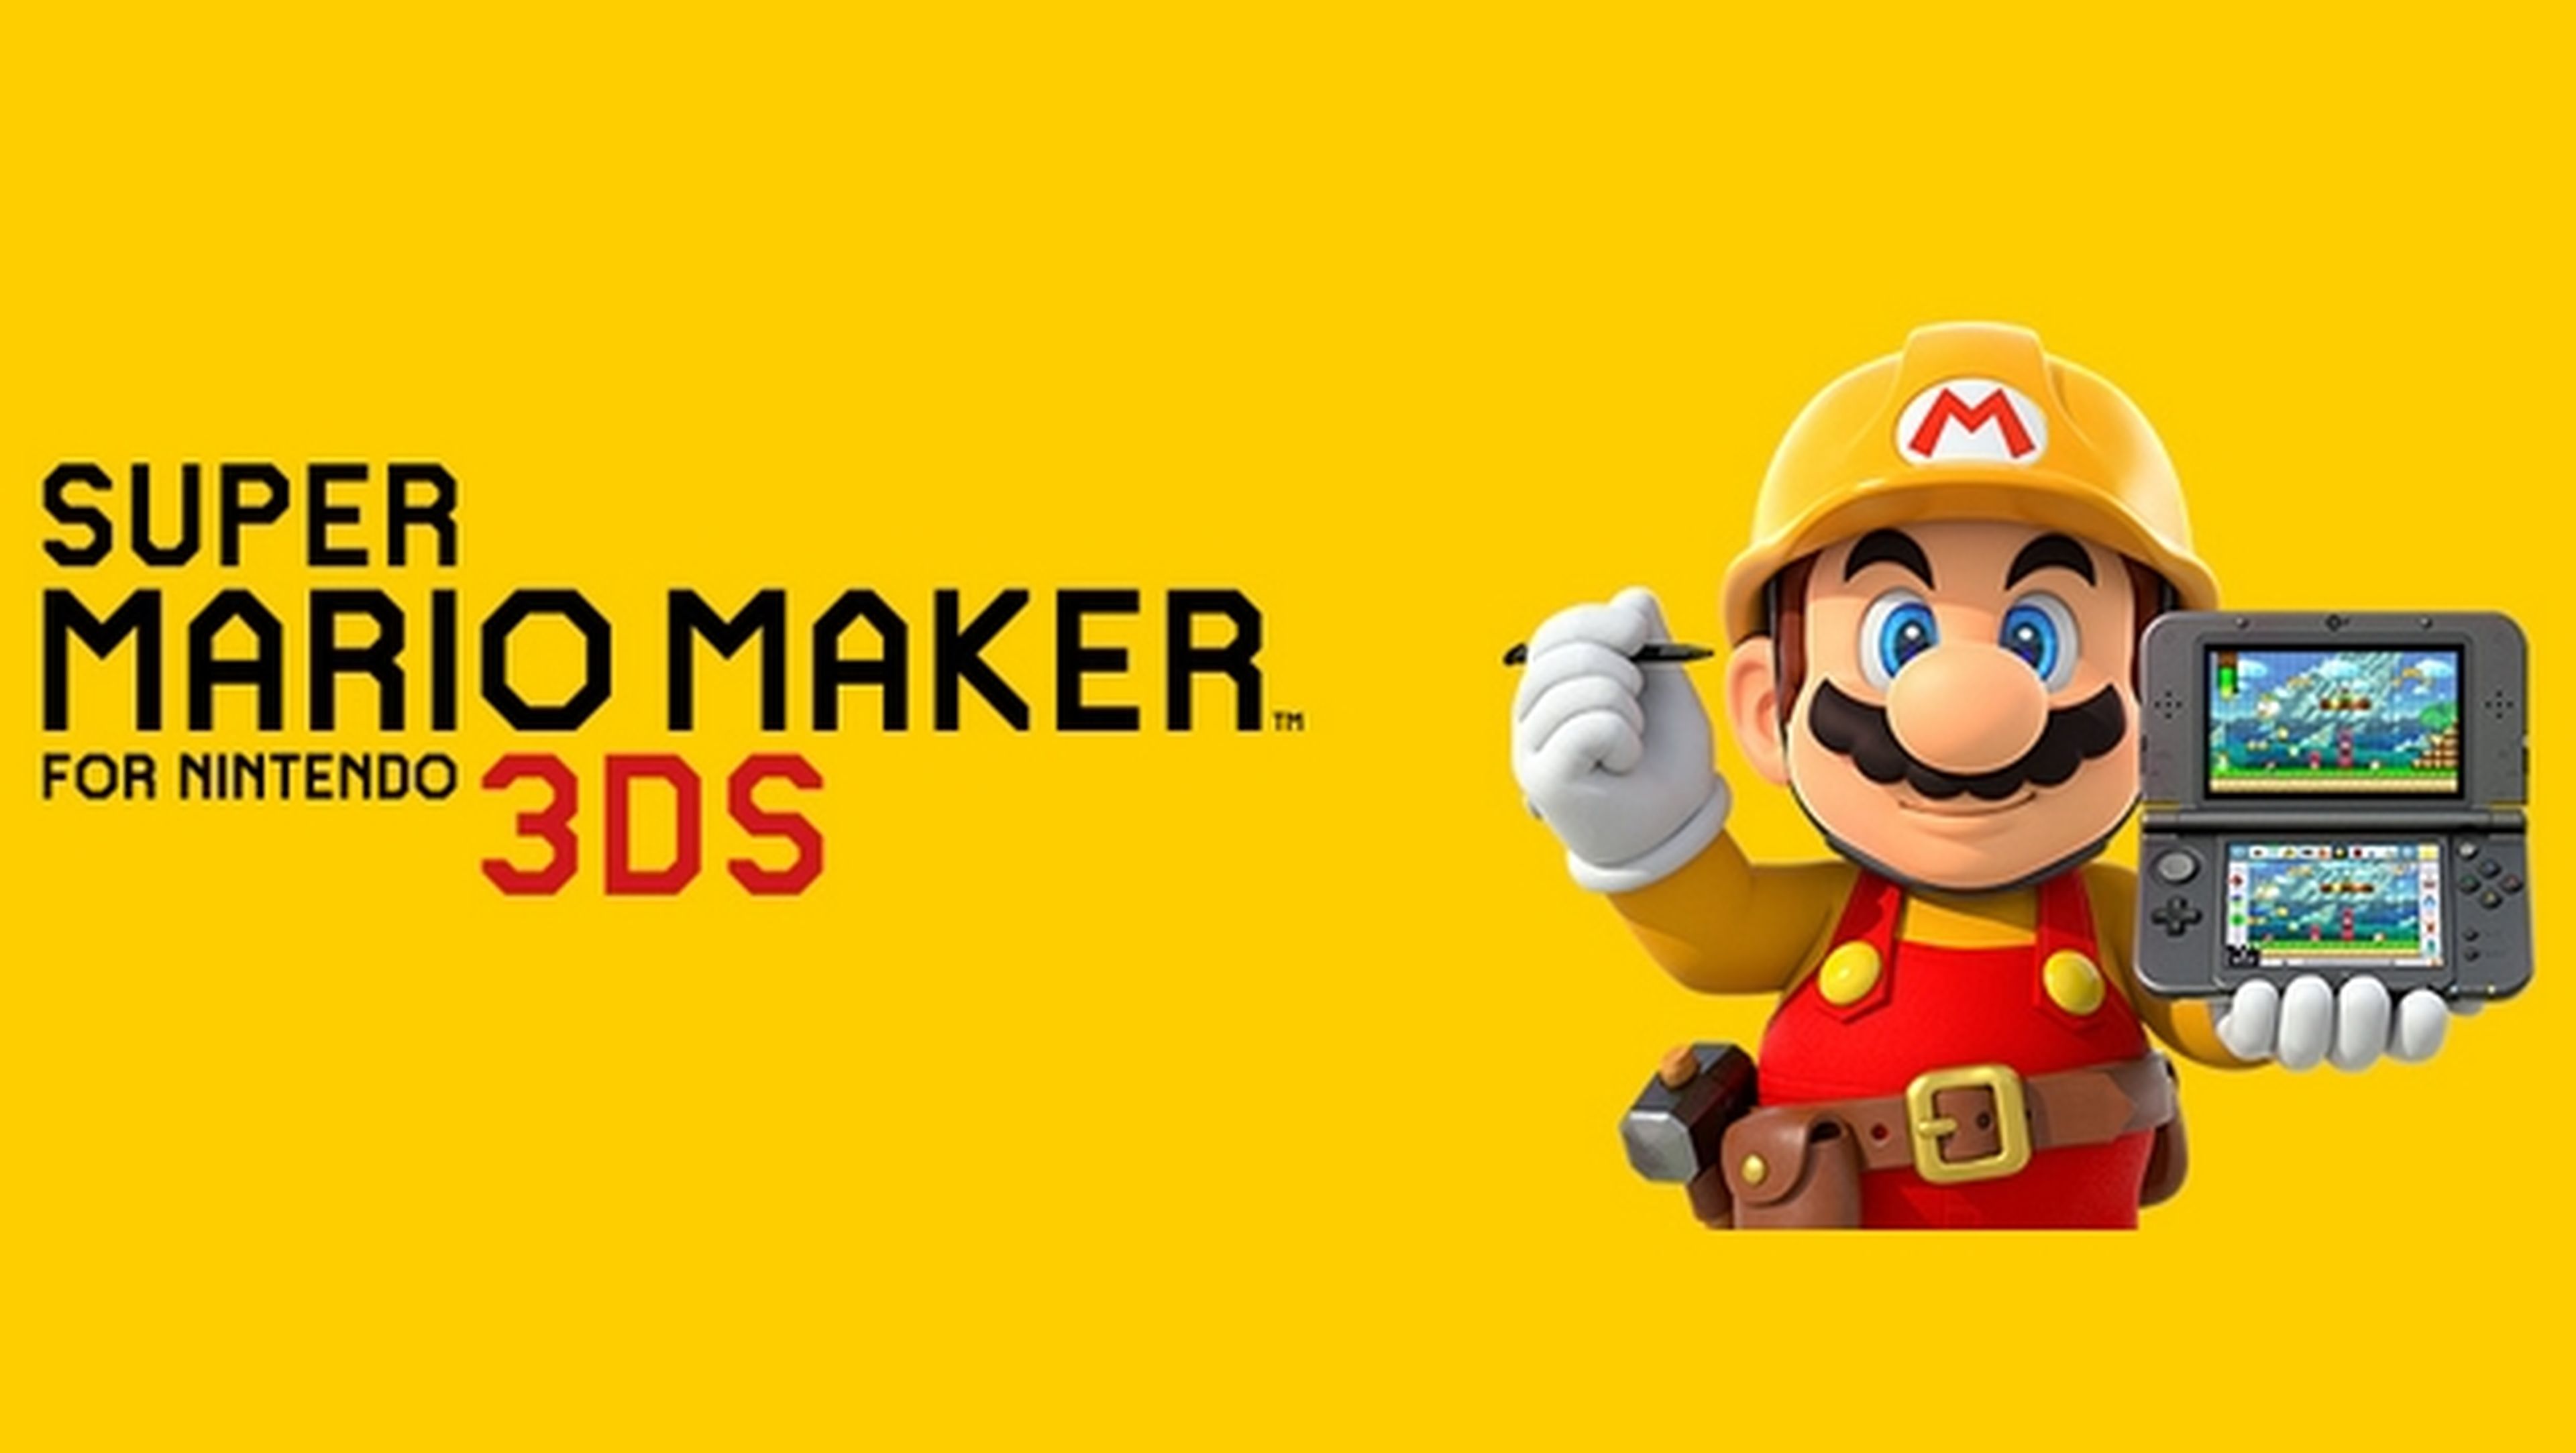 Super Mario Maker portátil llega a Nintendo 3DS